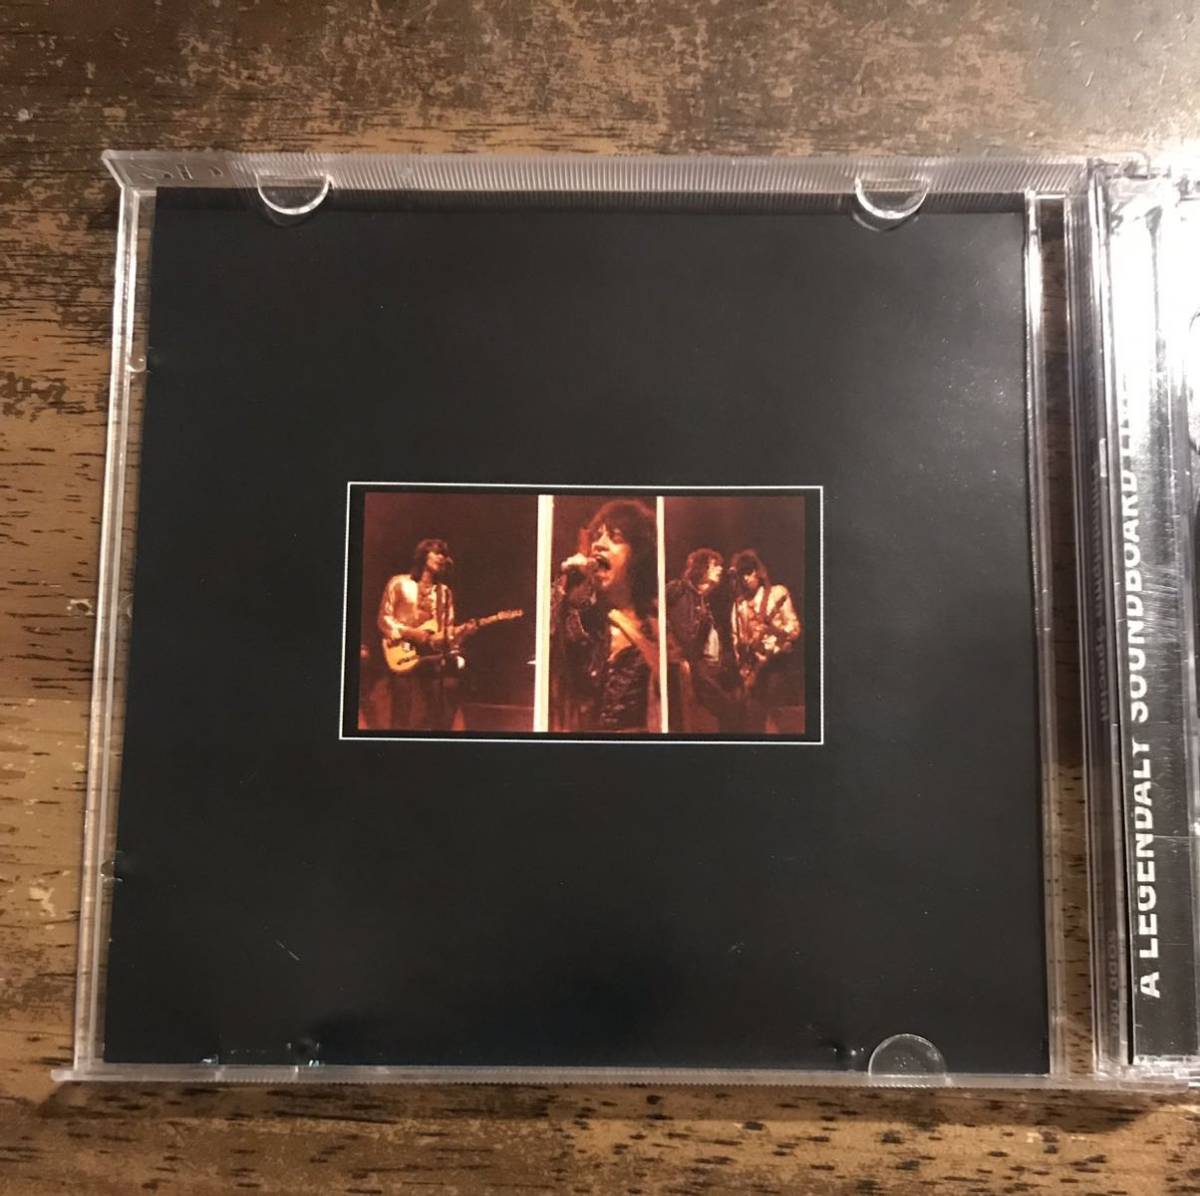 200セット限定2CD盤 / The Rolling Stones / ローリングストーンズ / Philadelphia Special / 1CD + 200 Limited Bonus CDR ■ Soundboard_画像3